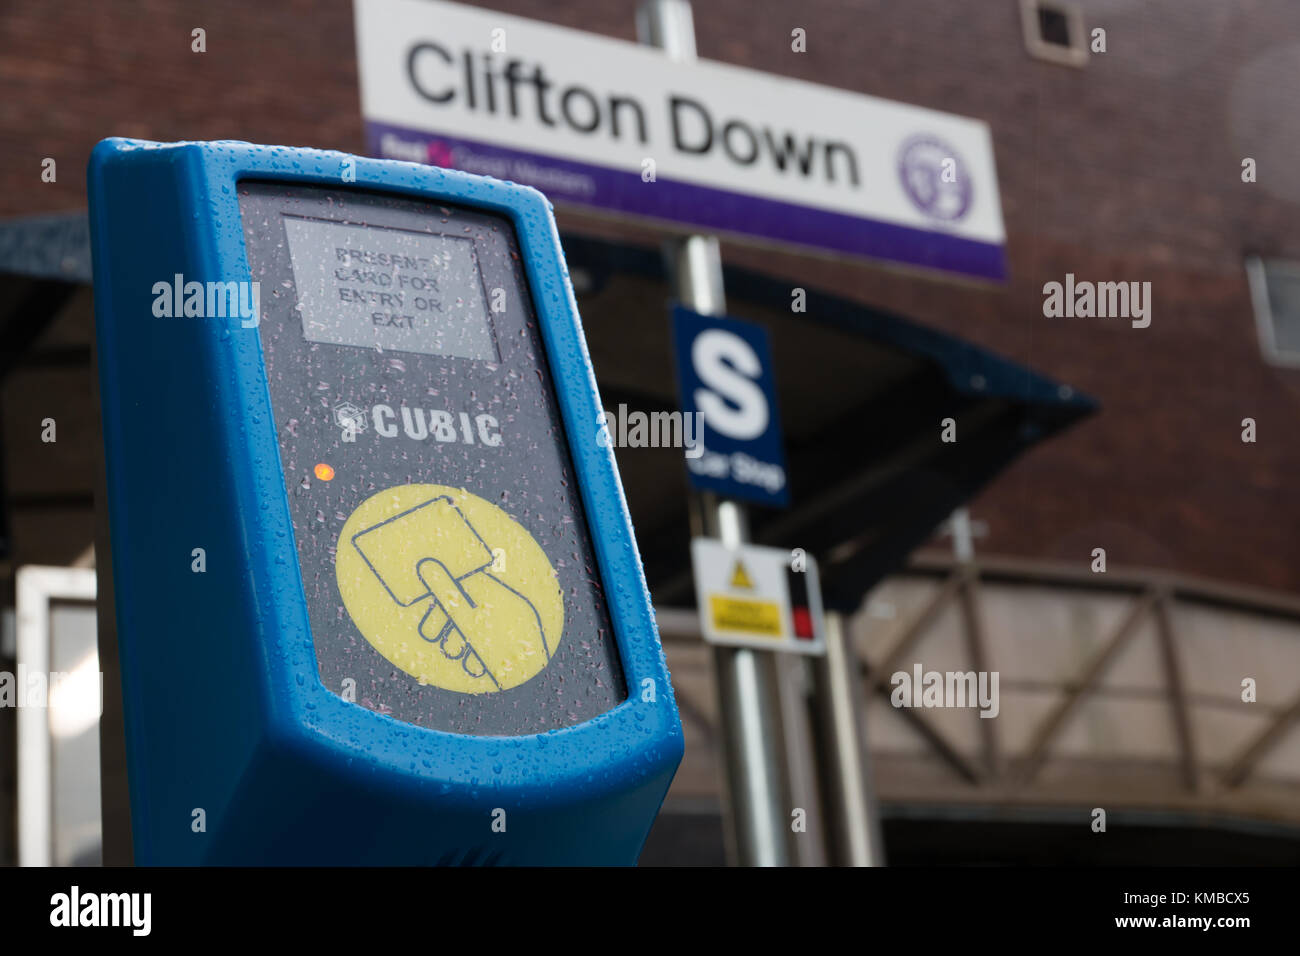 Toccare cubi card ticket terminale di convalida presso la Clifton Down stazione ferroviaria Foto Stock